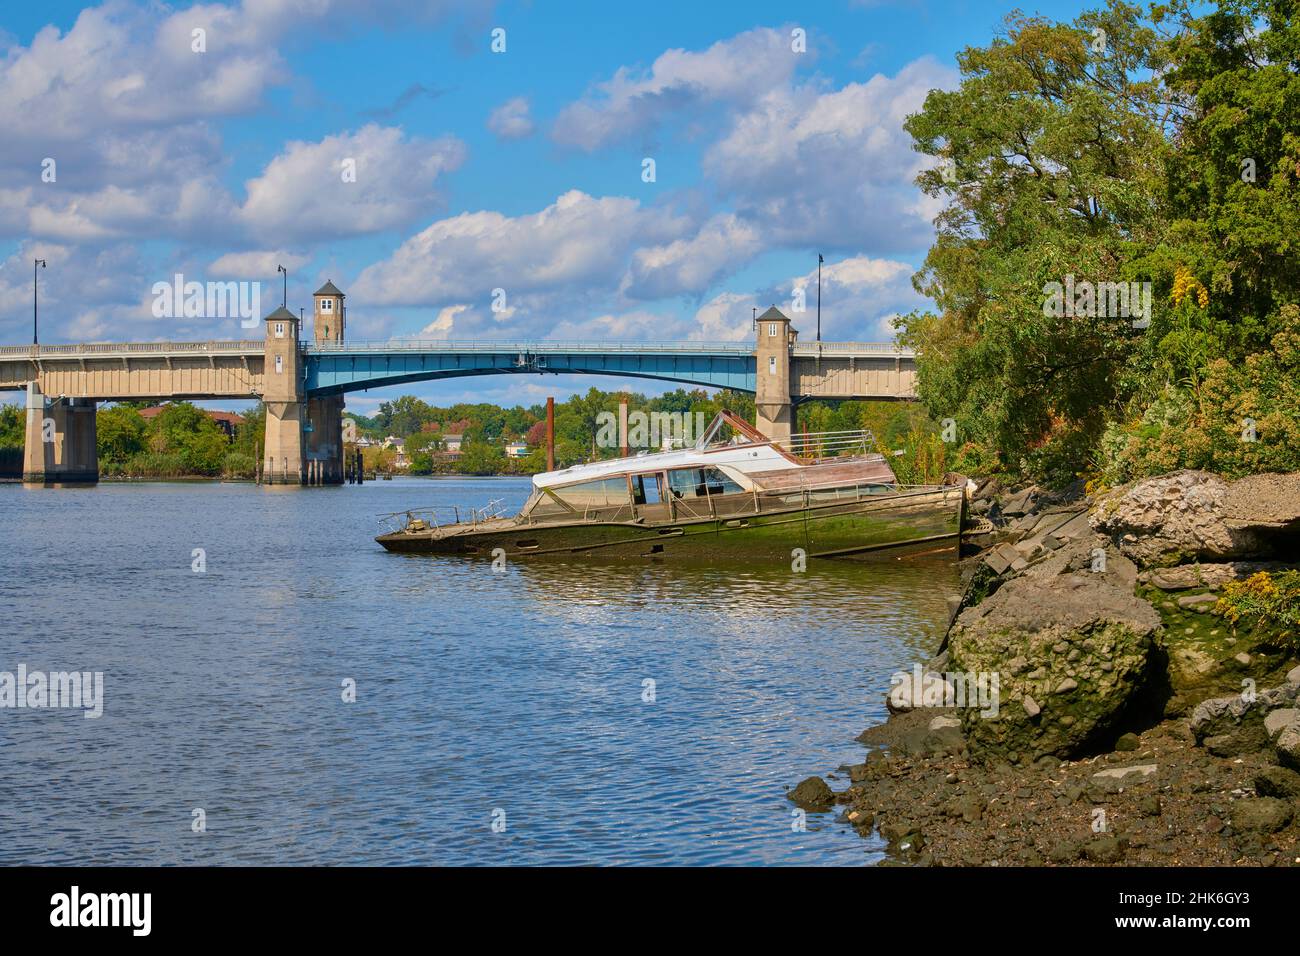 Bateau-cabine d'époque à moitié encastré.Sur les rives de la rivière Hackensack dans le New Jersey, États-Unis. En direction du nord vers le pont-levis sur Winant Avenue Banque D'Images